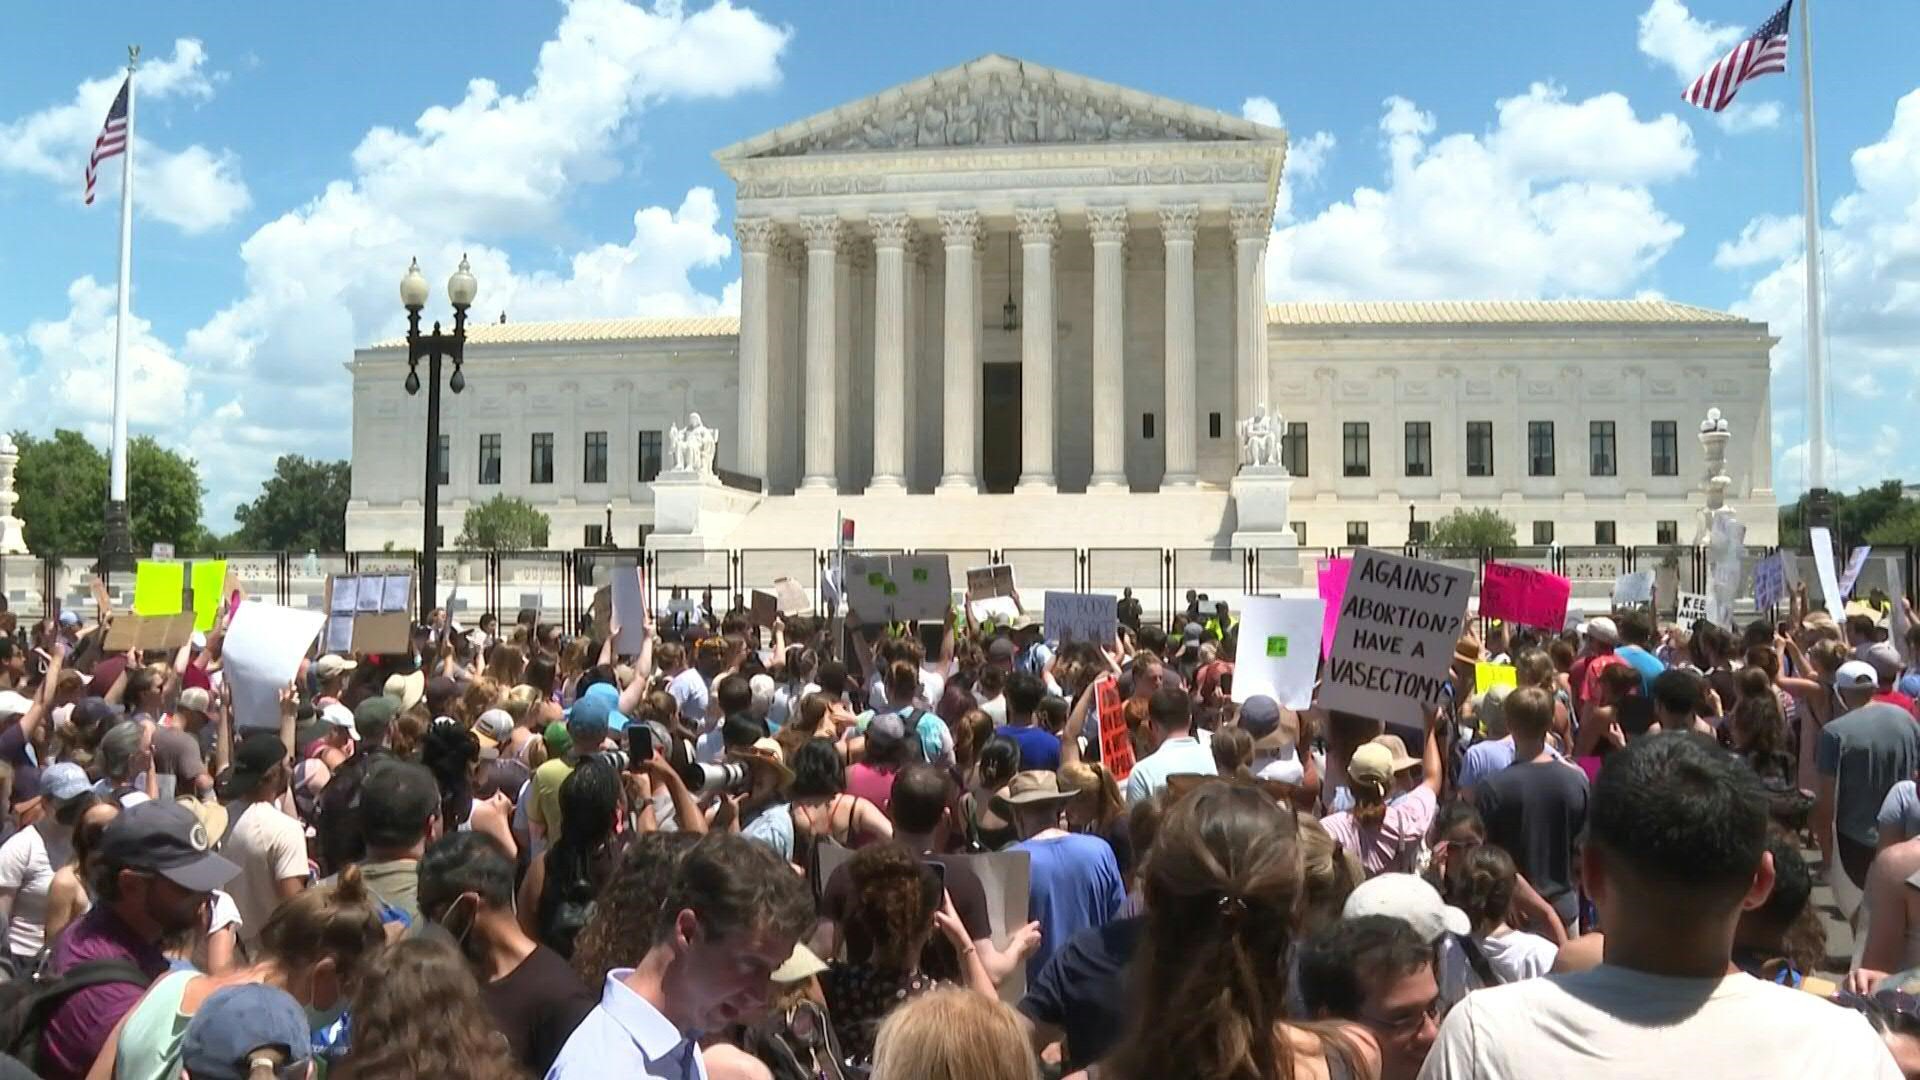 Los partidarios del derecho al aborto se movilizaron el sábado por todo Estados Unidos en el segundo día de protestas contra el fallo de la Corte Suprema, mientras los estados conservadores comienzan a prohibir las interrupciones voluntarias de embarazos